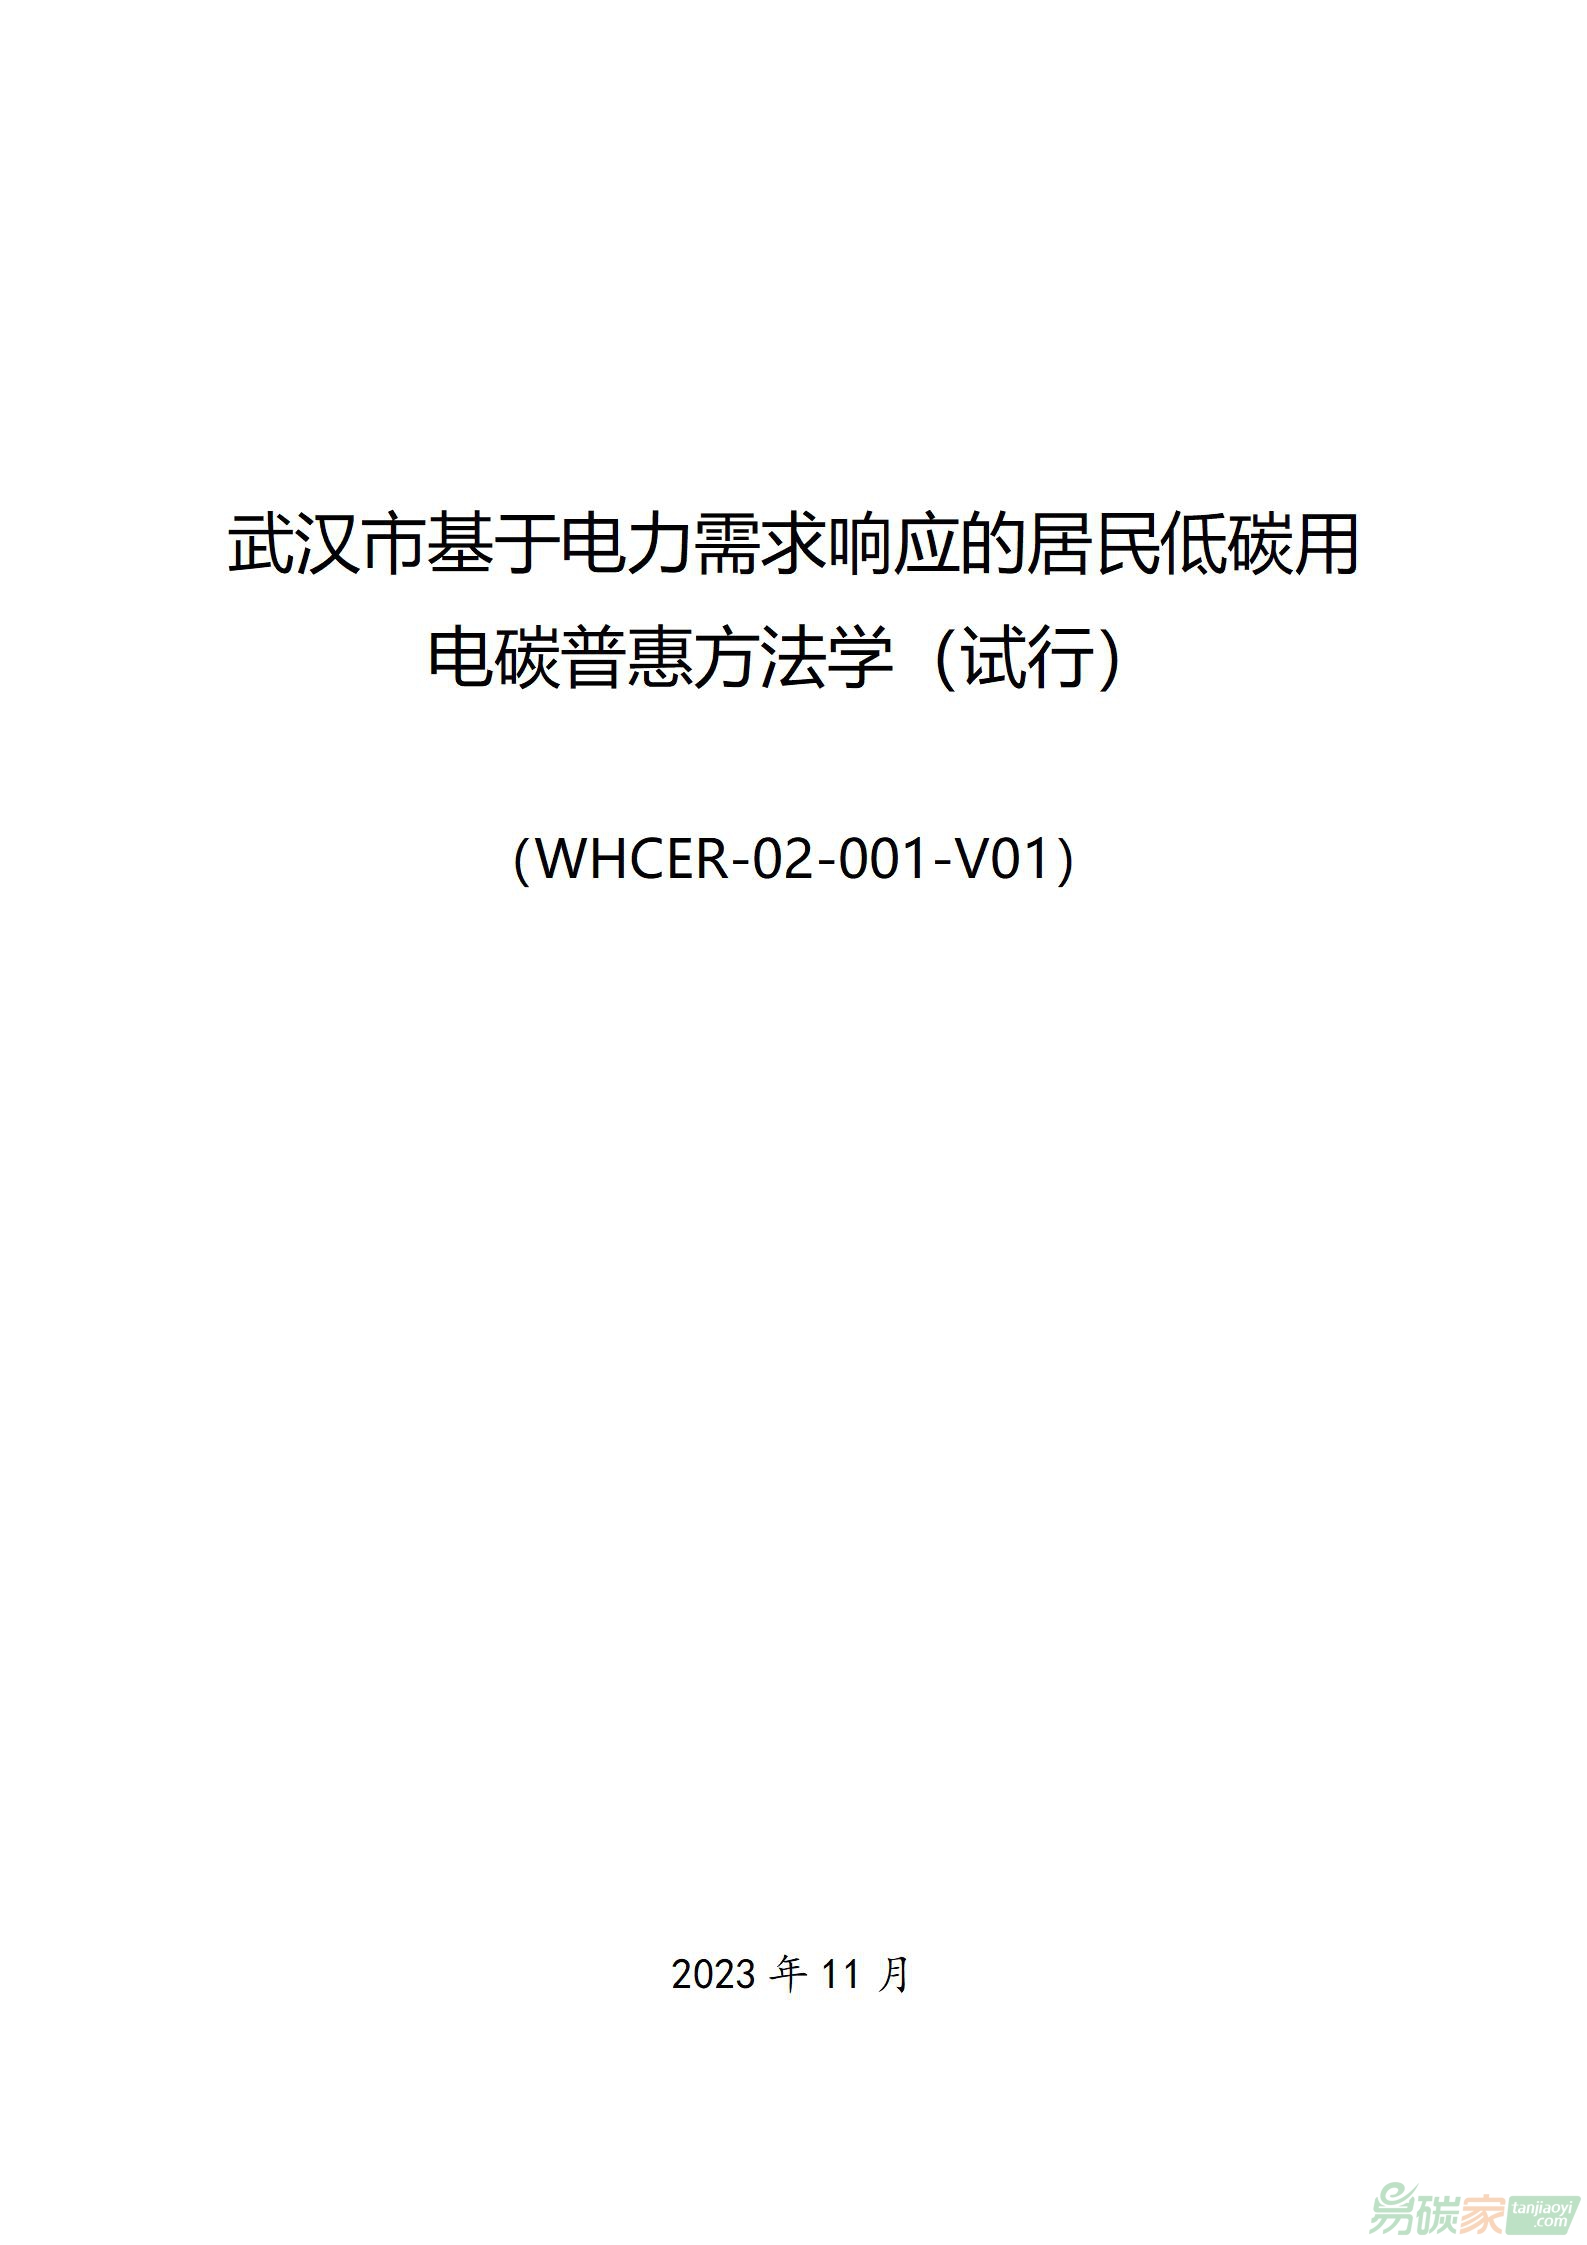 武汉市基于电力需求响应的居民低碳用电碳普惠方法学（试行）（WHCER-02-001-V01）